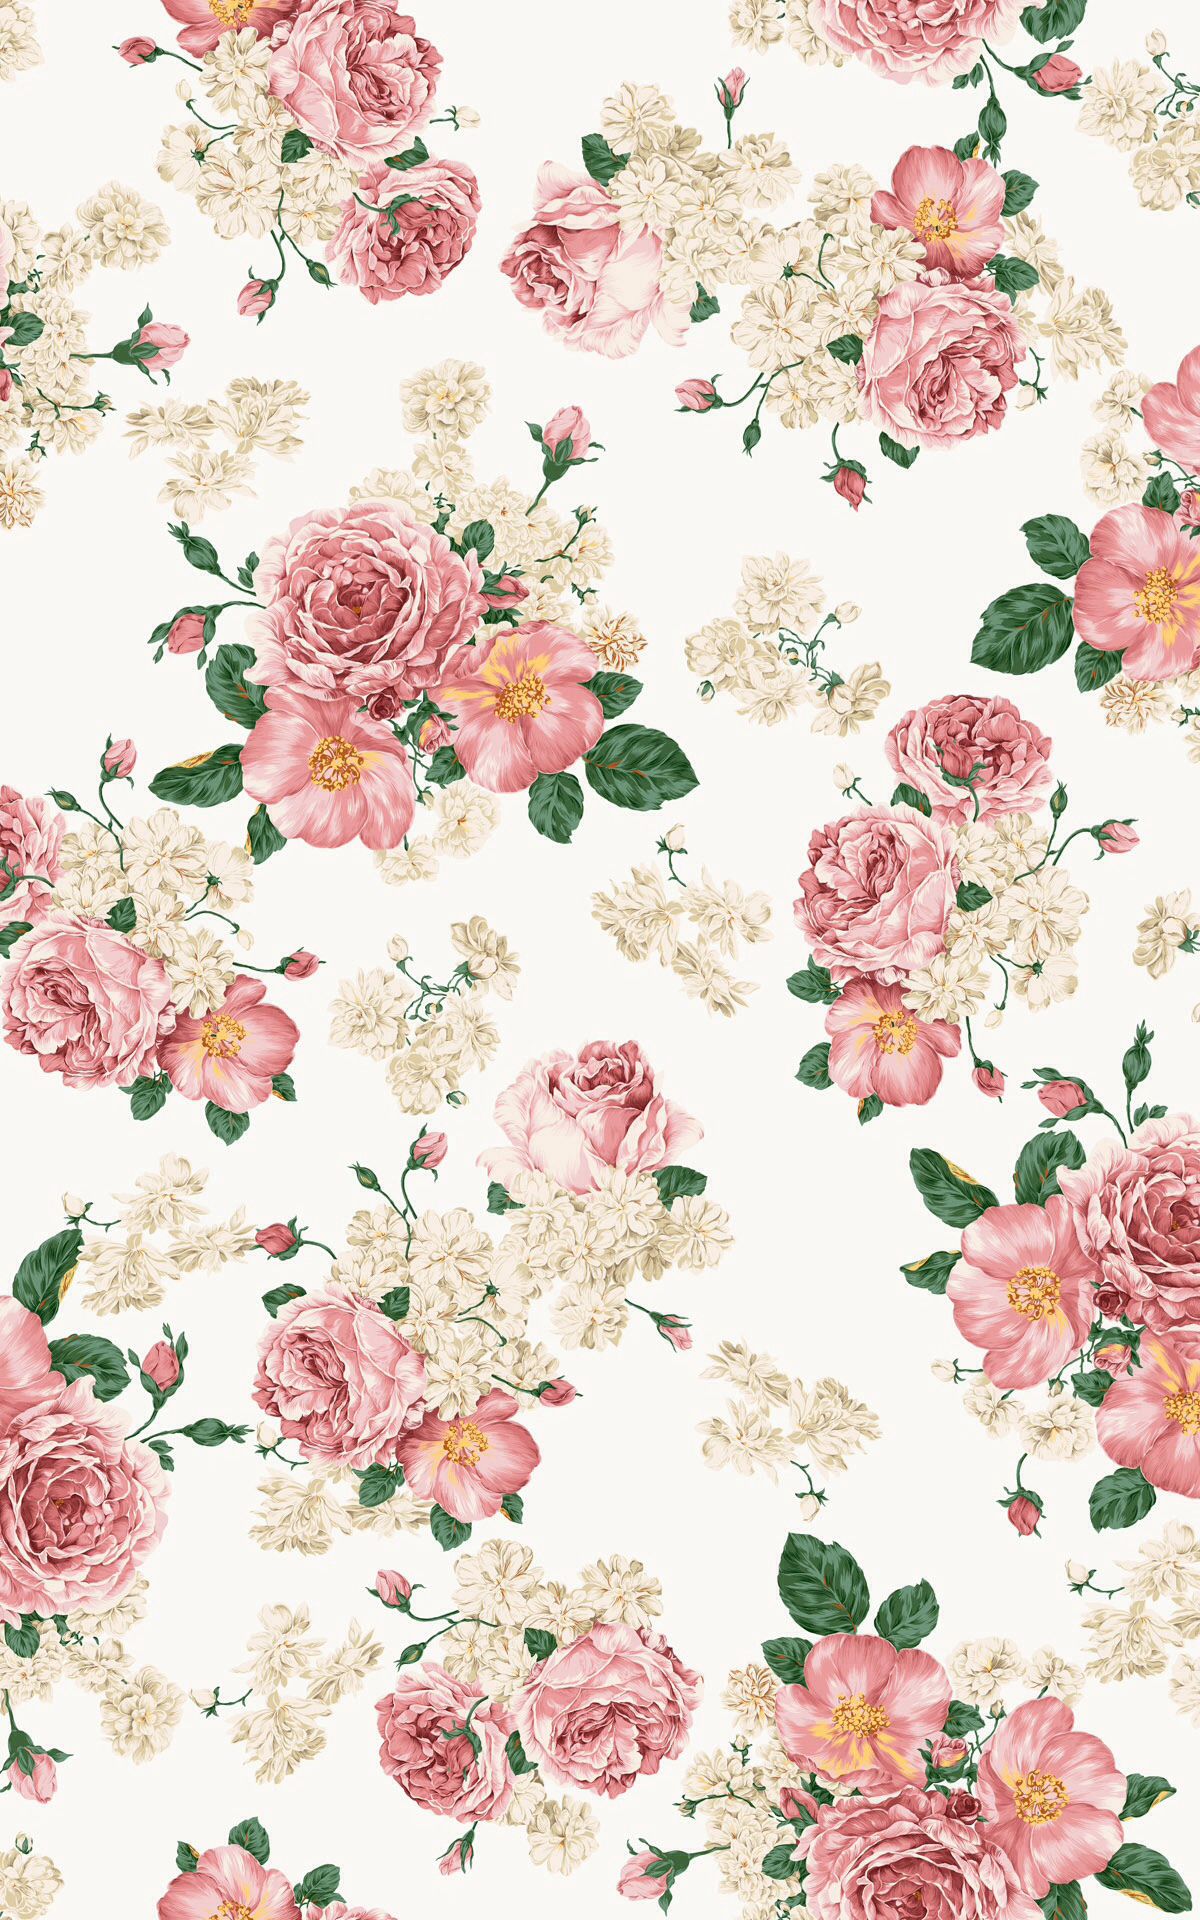 floral wallpaper,pink,floral design,flower,rose,pattern